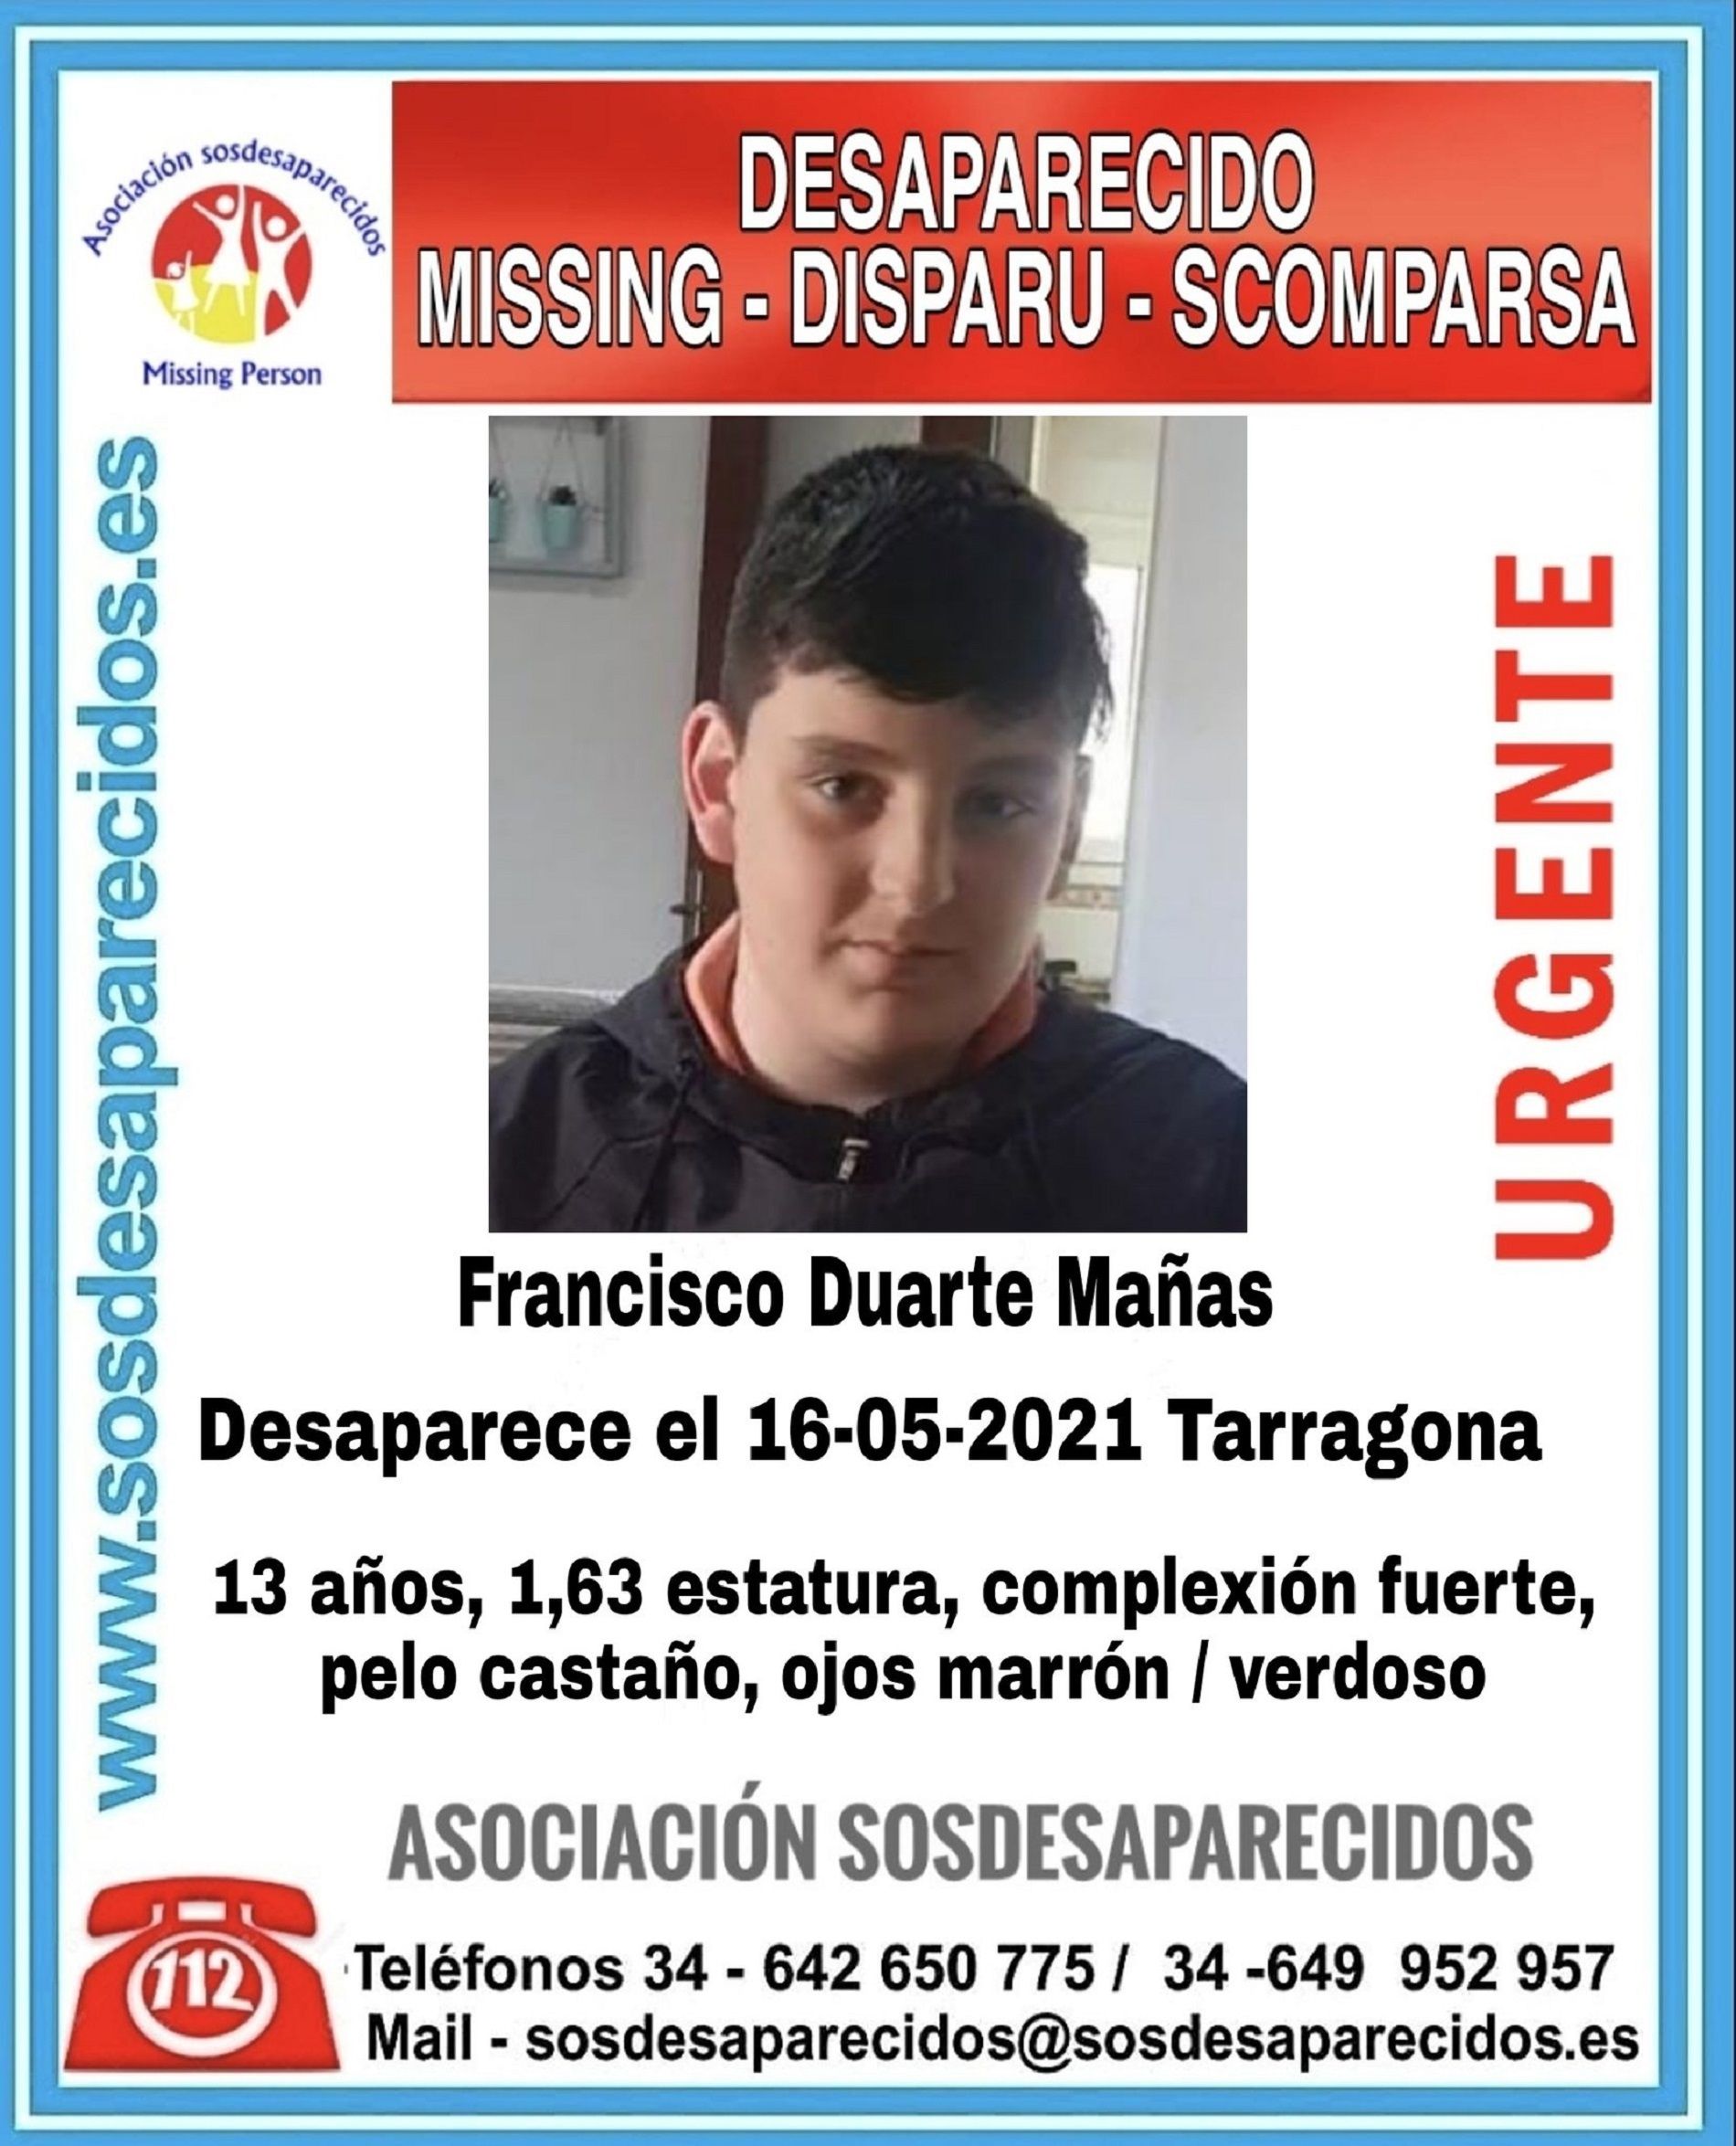  Francisco Duarte Mañas / SOS Desaparecidos